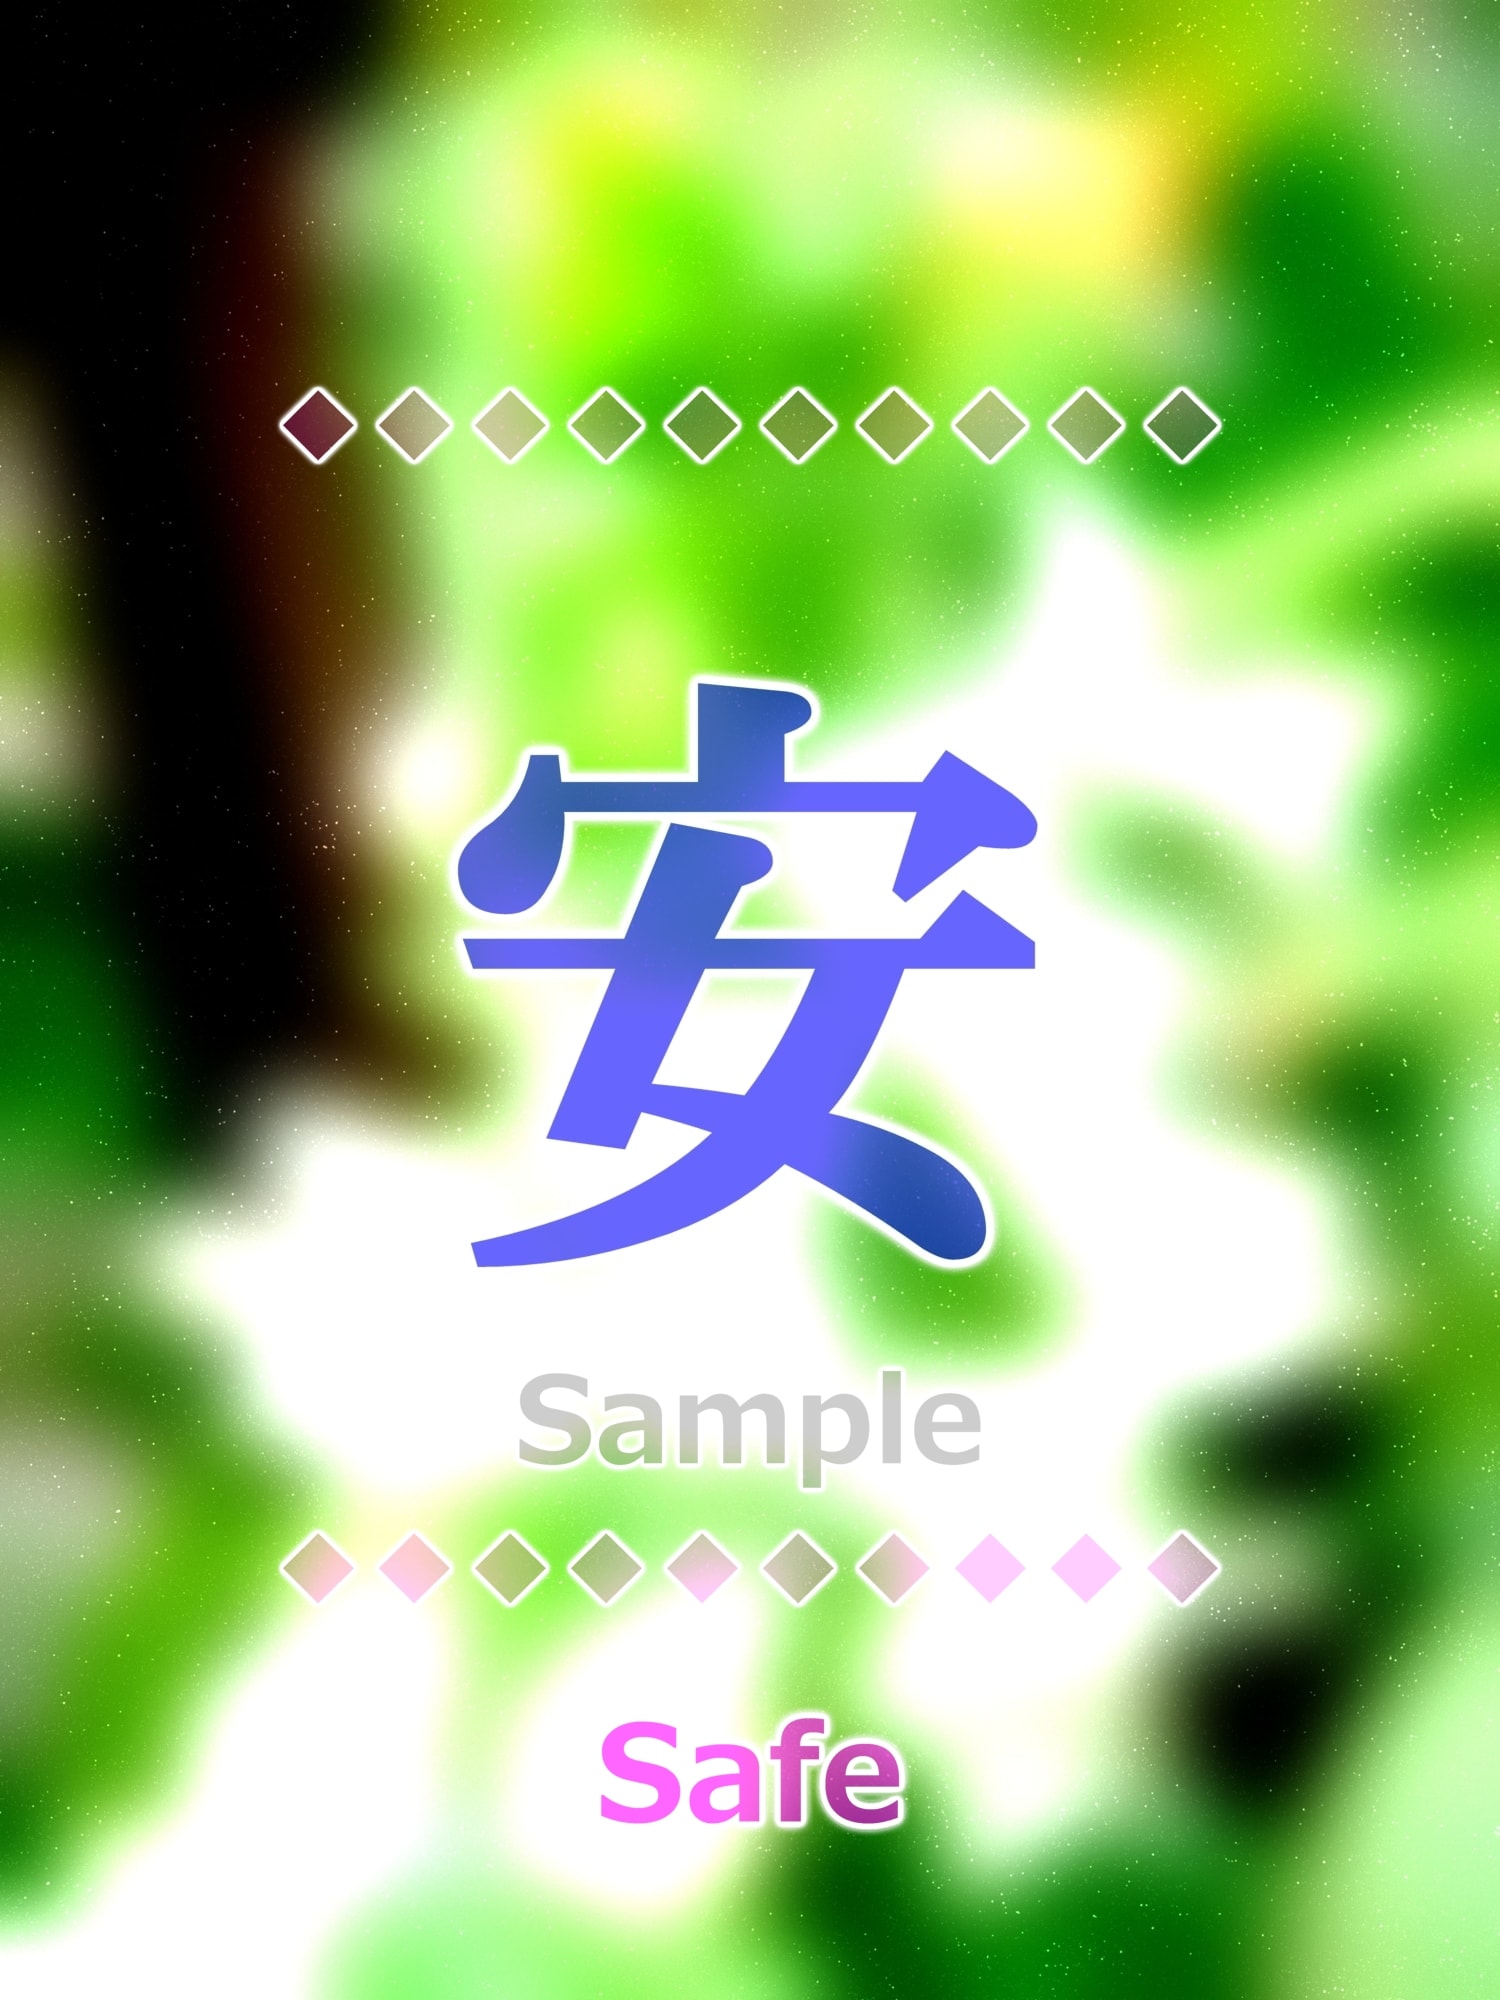 安 safe Kanji good luck charm amulet art glossy